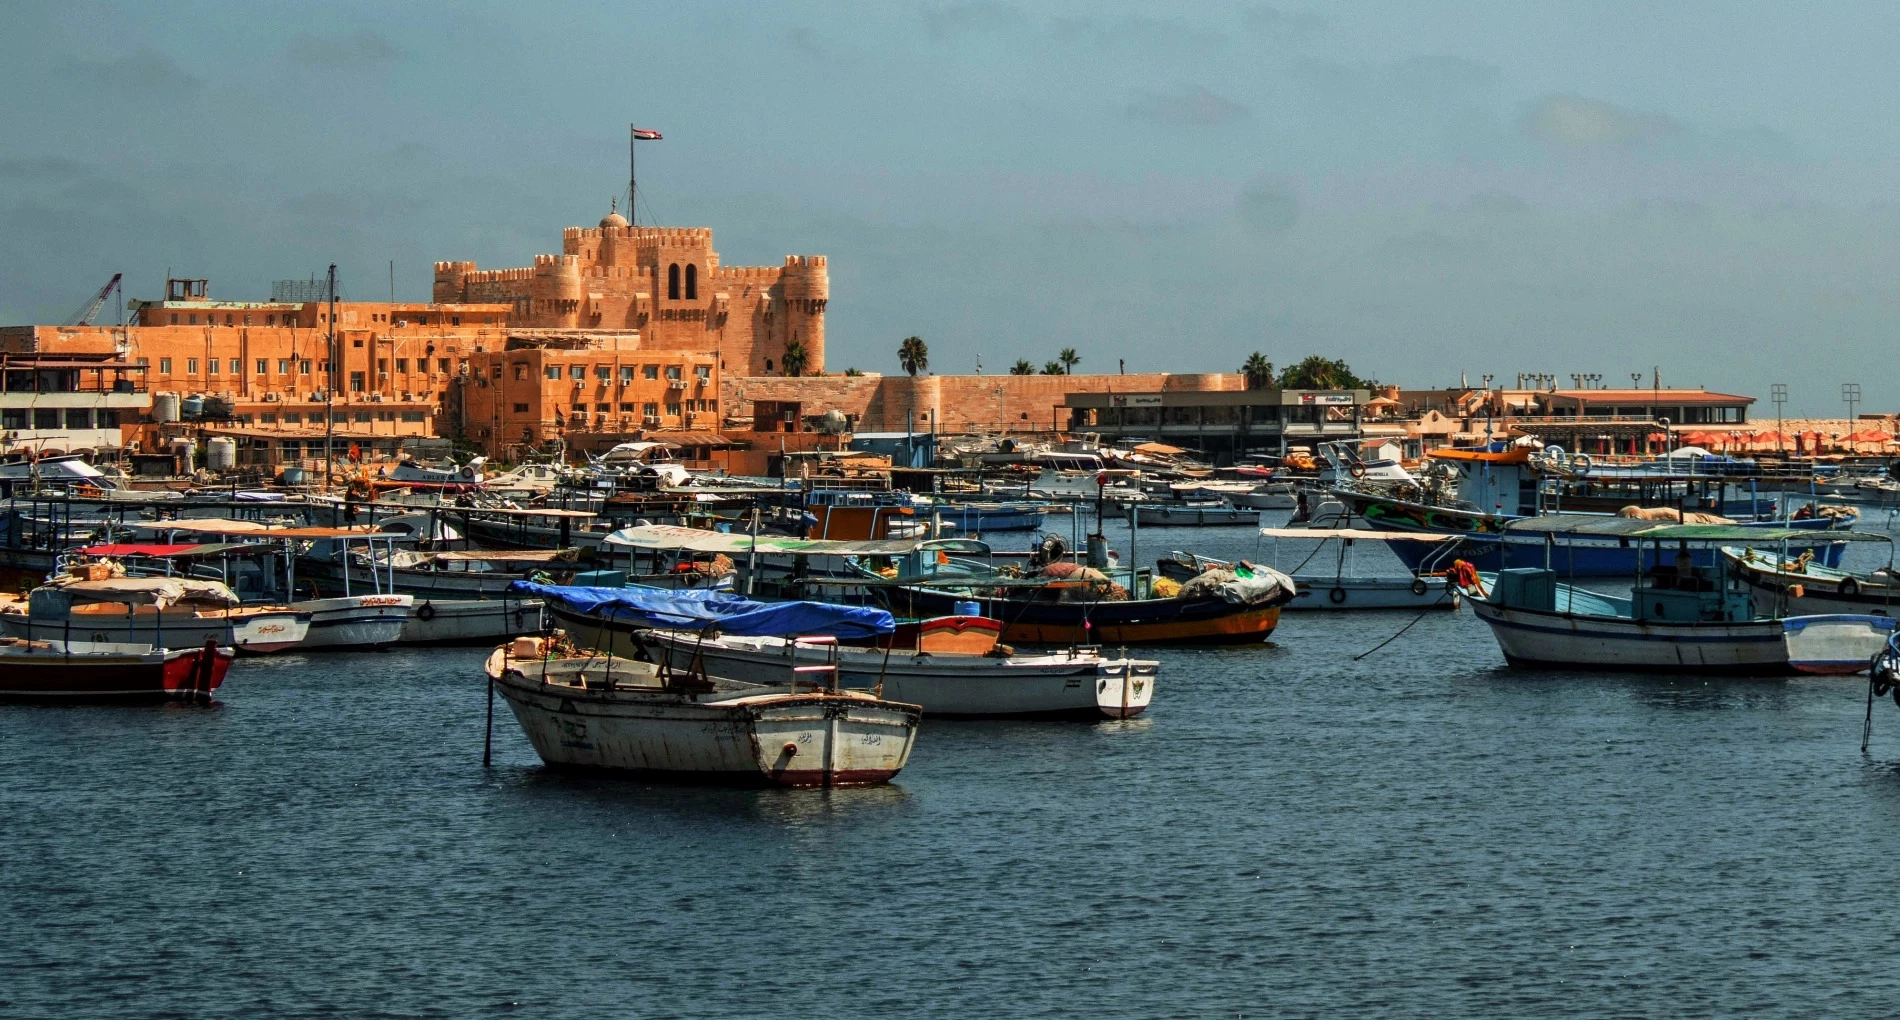 De haven van Alexandrië, de stad waar het Oude Testament in het Grieks (de Septuagint) werd vertaald